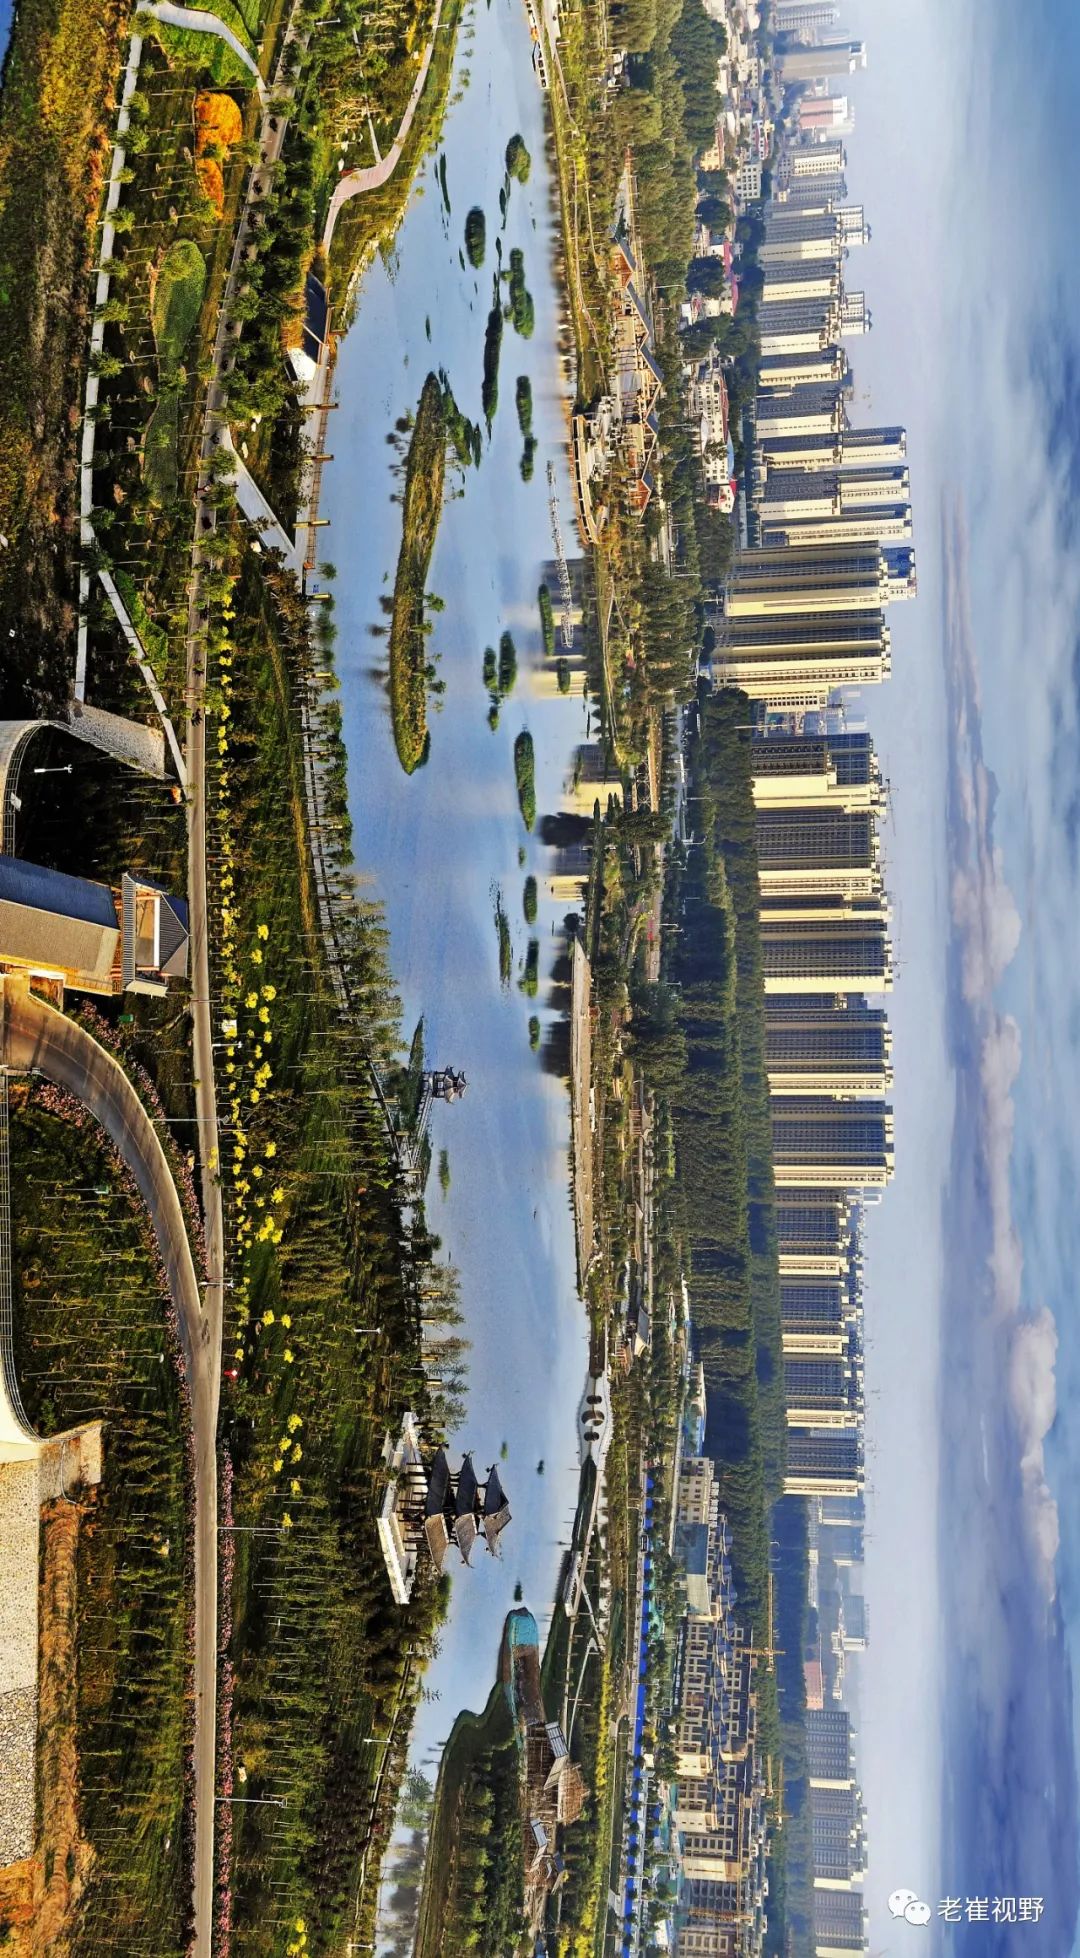 航拍视角:滏阳河,流出了邯郸的十大美丽园林